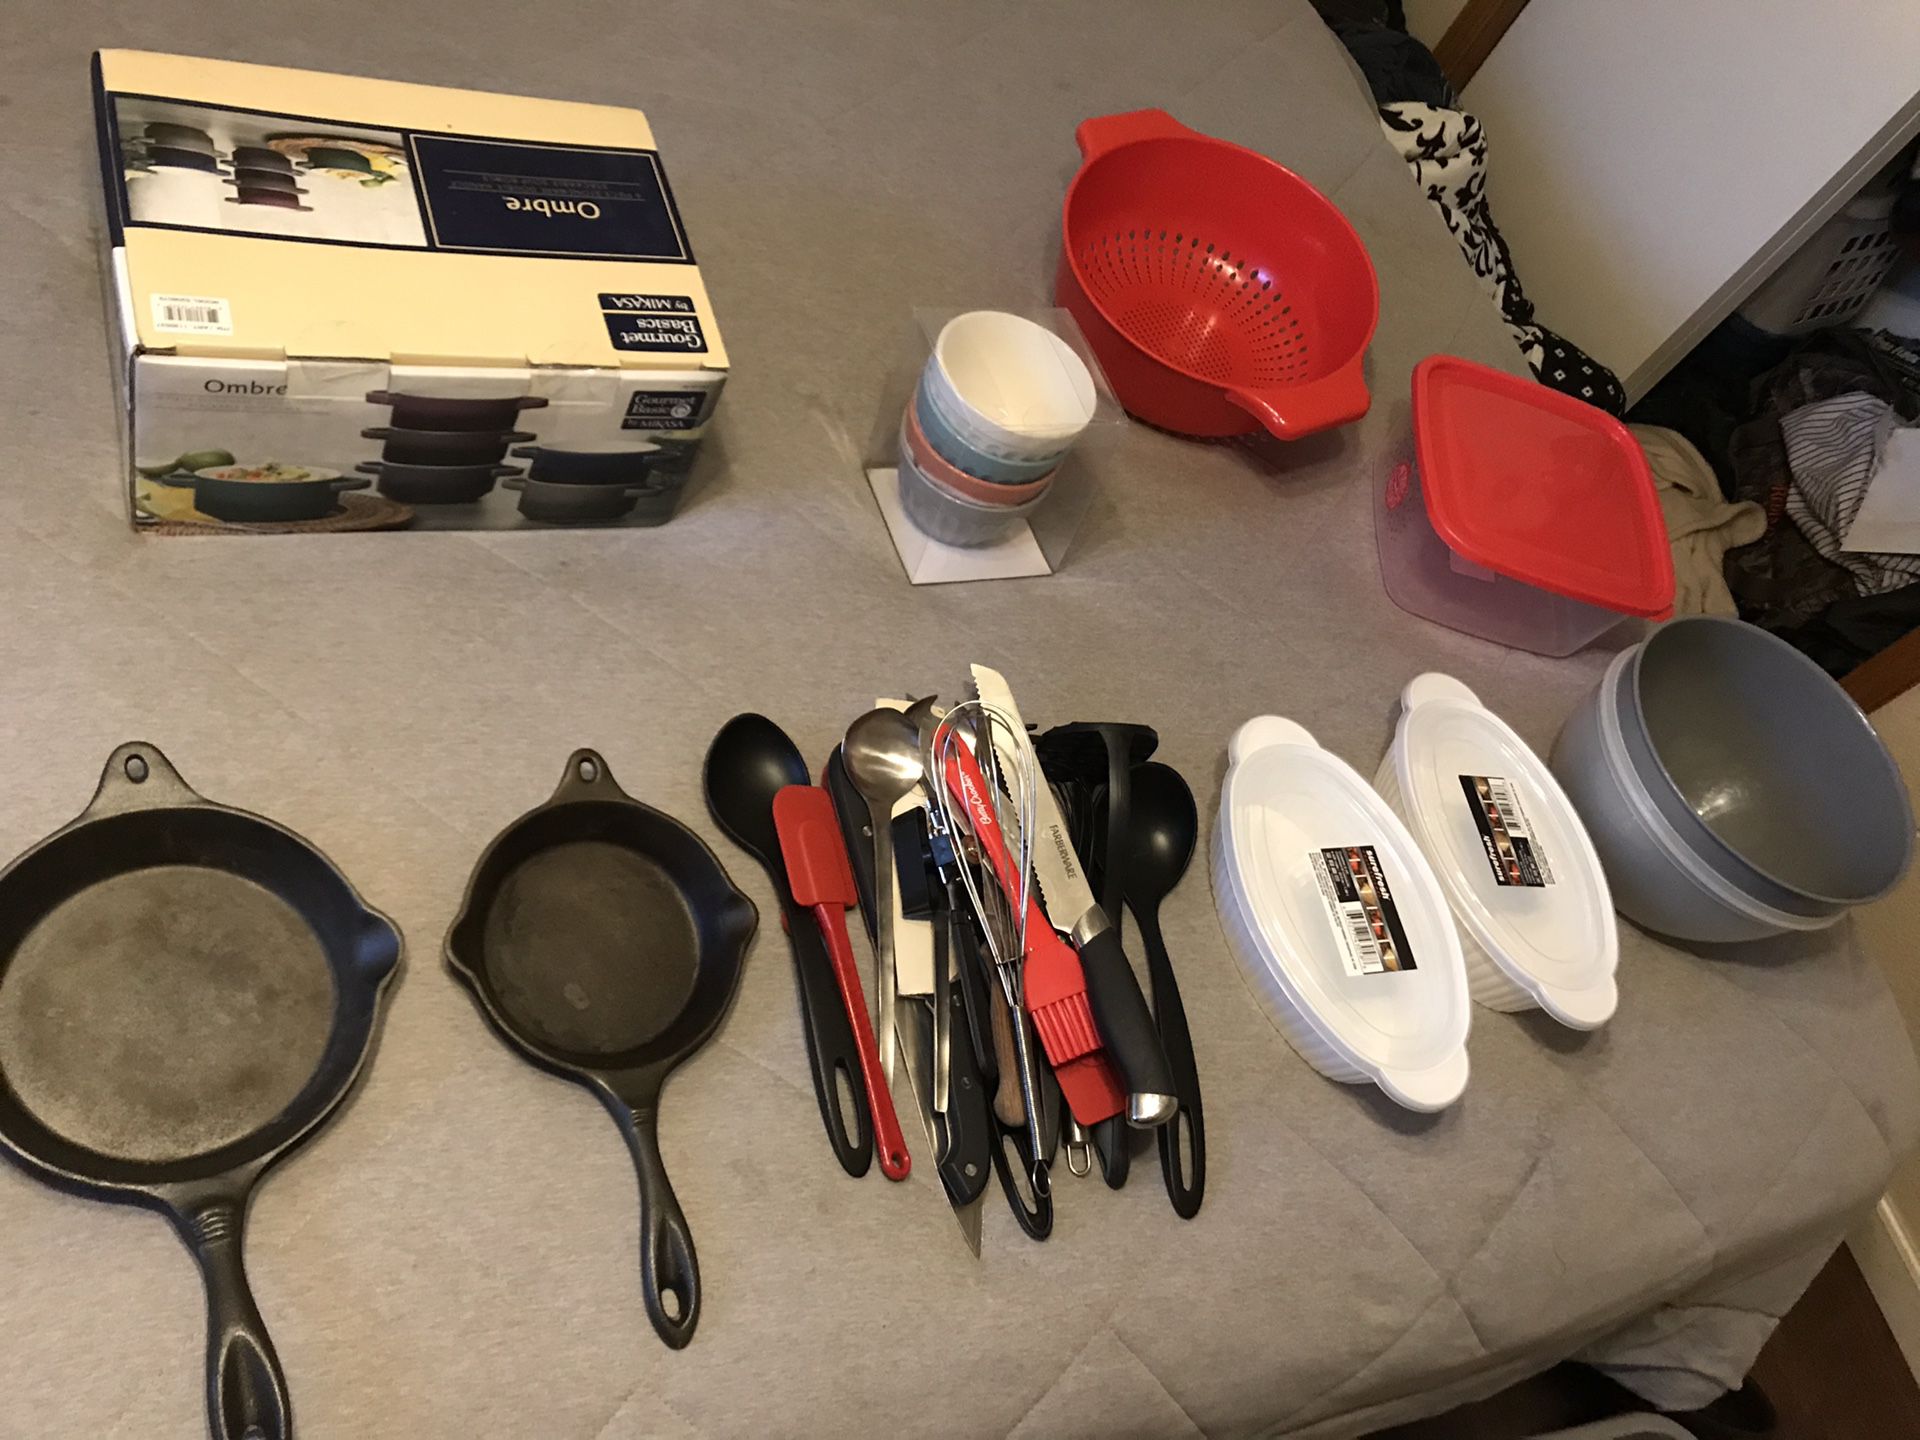 Brand New kitchen stuff, utensils, and mini bbq (read post)